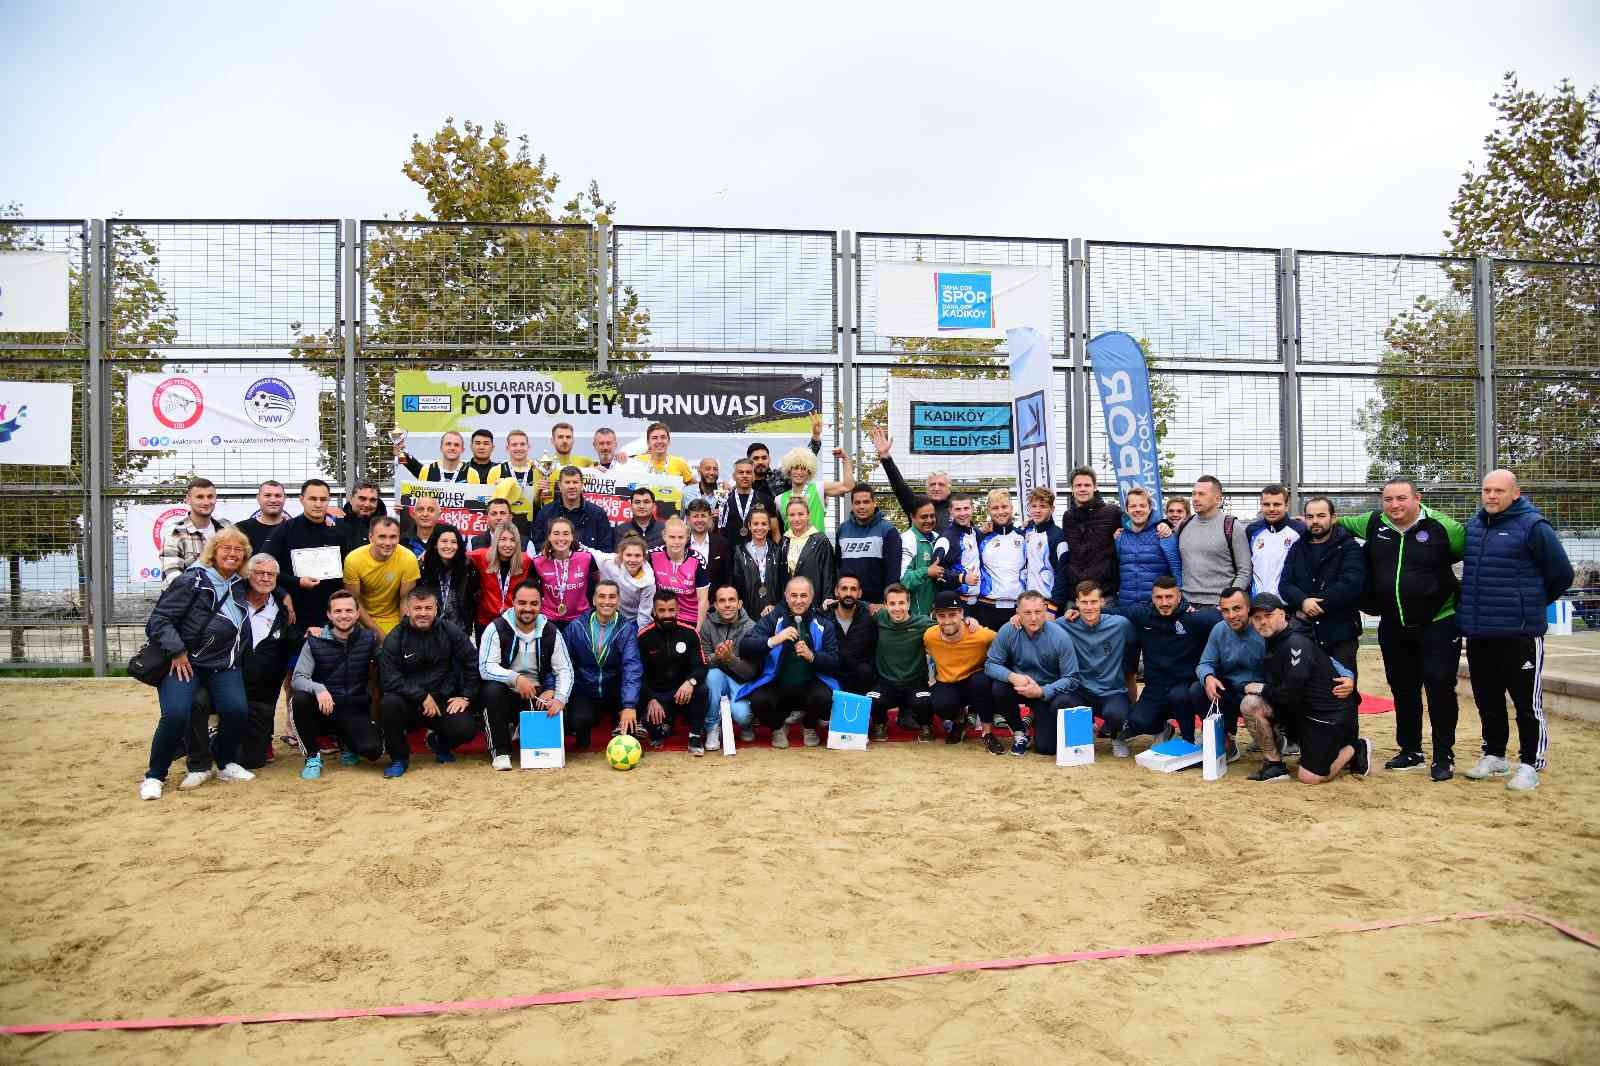 Kadıköy, Uluslararası Footvolley Turnuvası’na ev sahipliği yaptı #istanbul